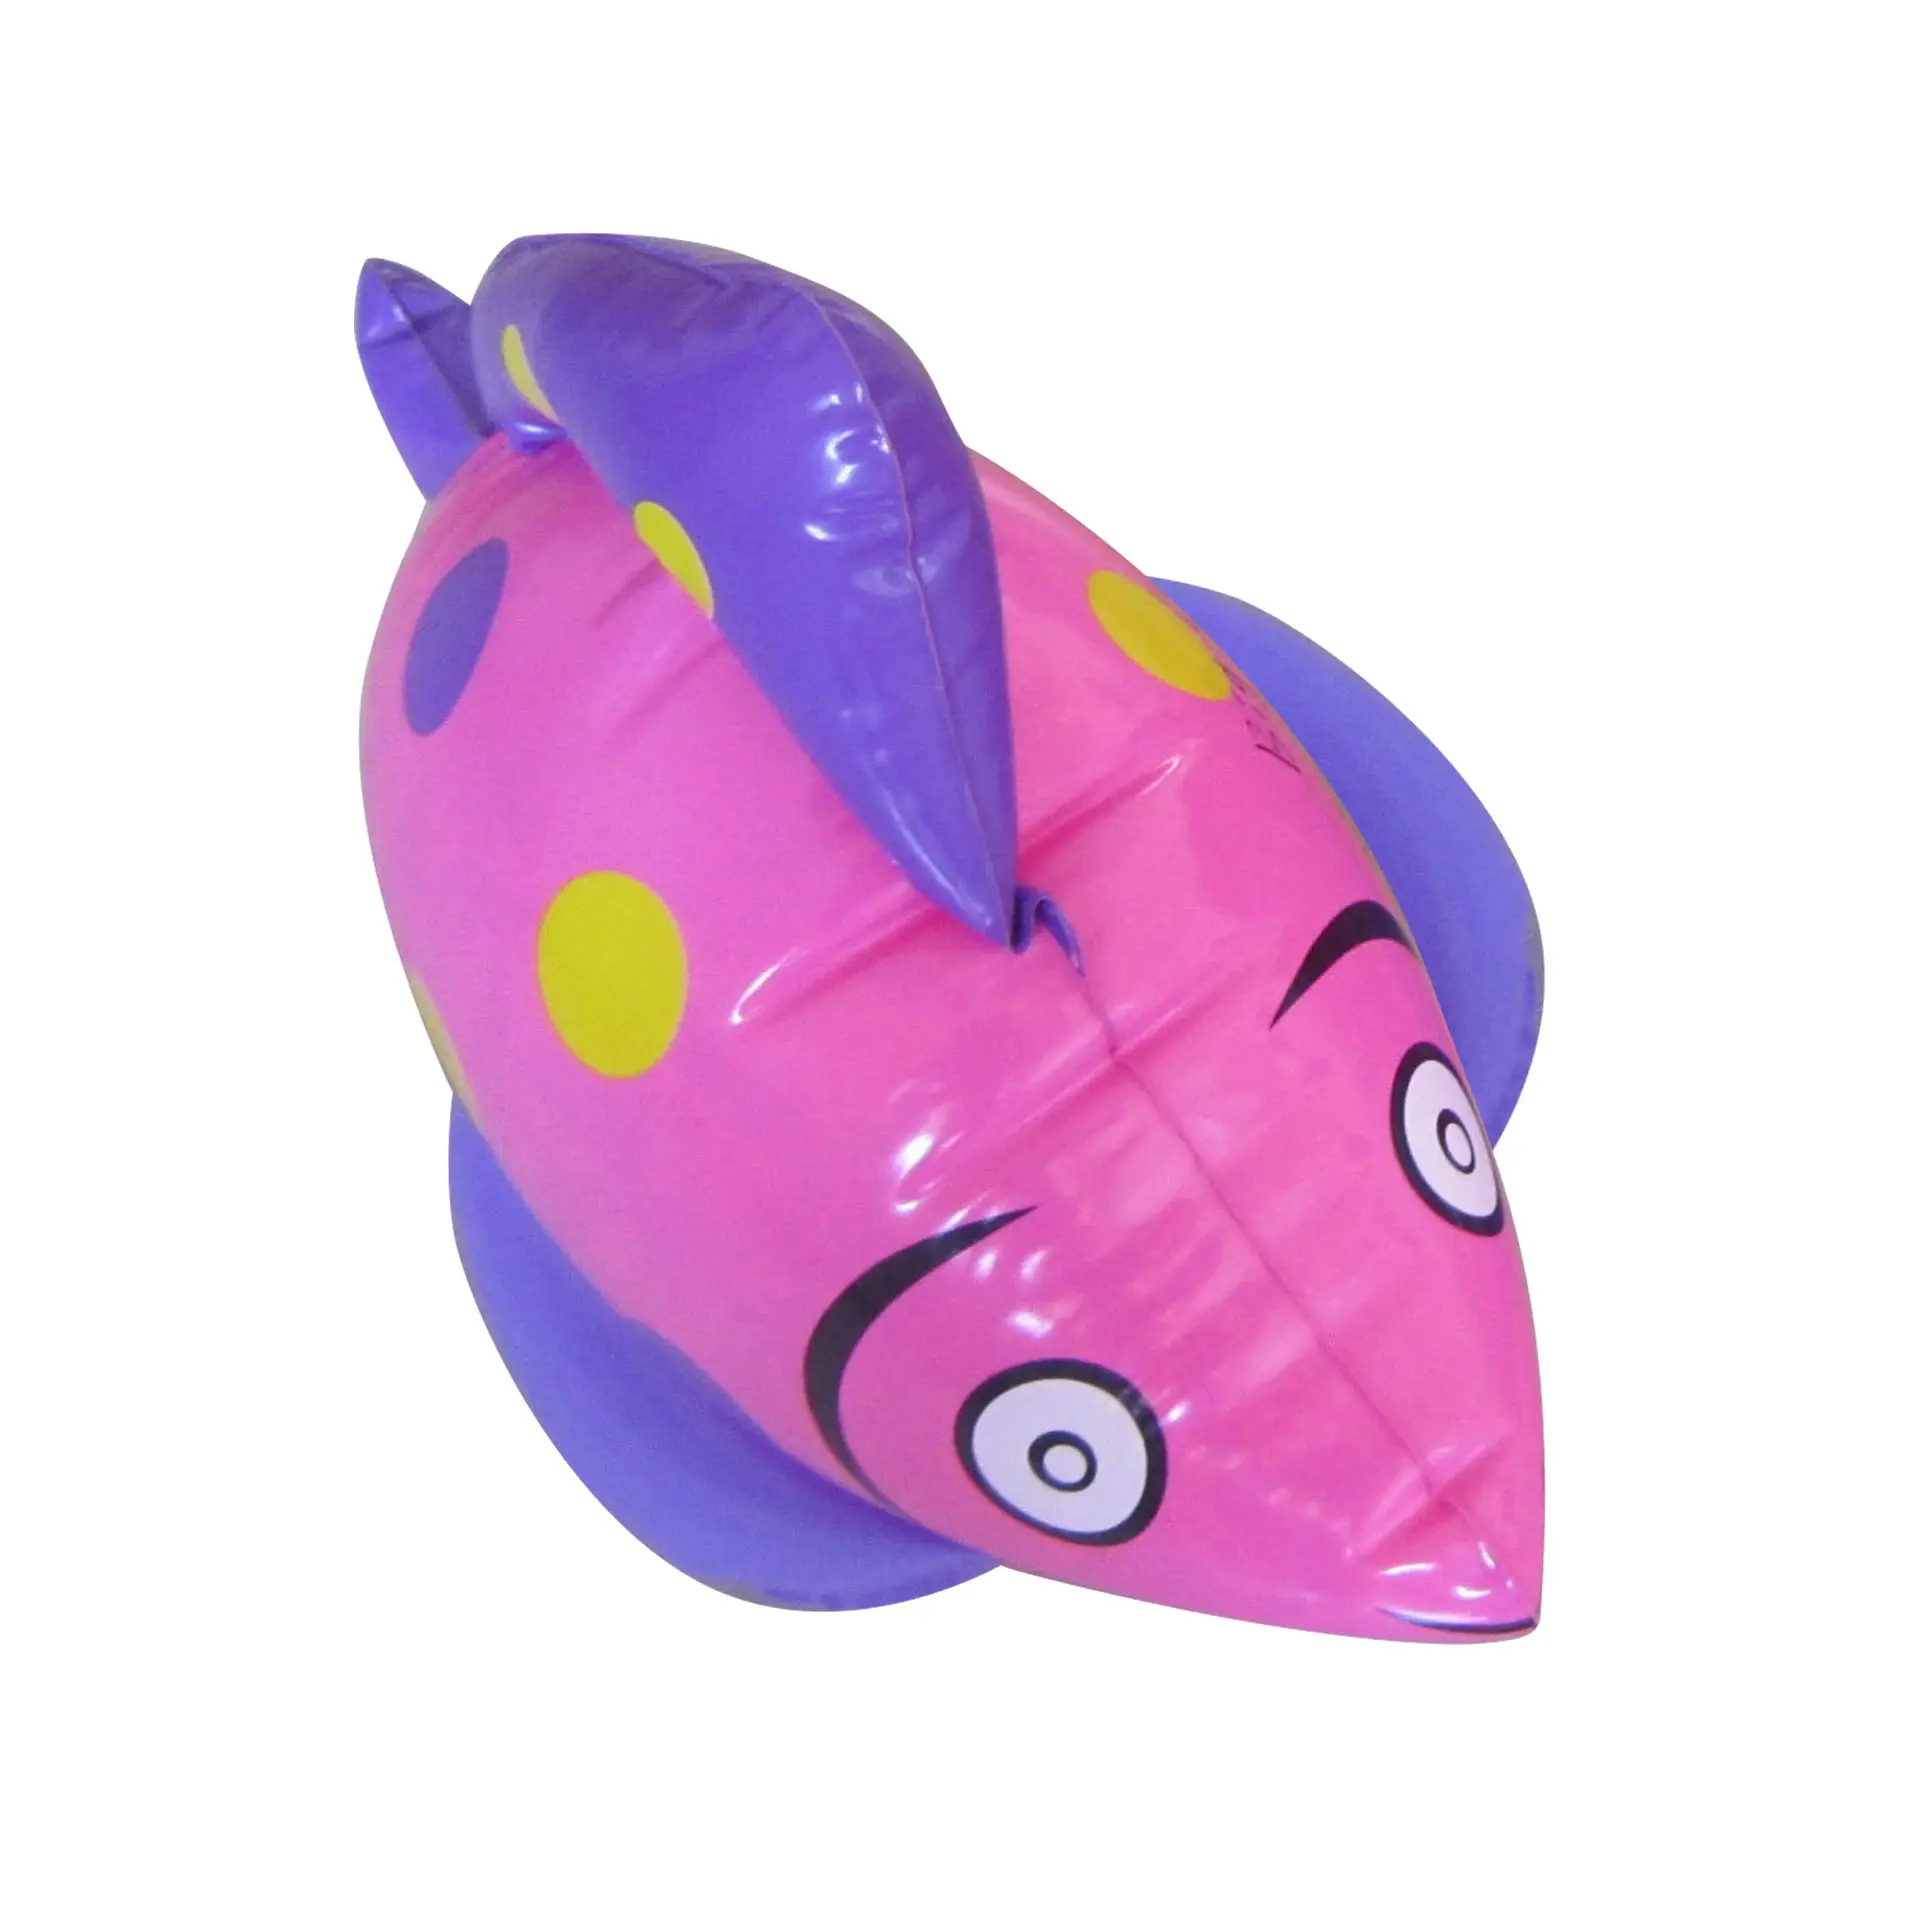 Peixe canguru vaulting cavalos peru, varas de imagem dos desenhos animados colorido, brinquedos infláveis fortes para crianças